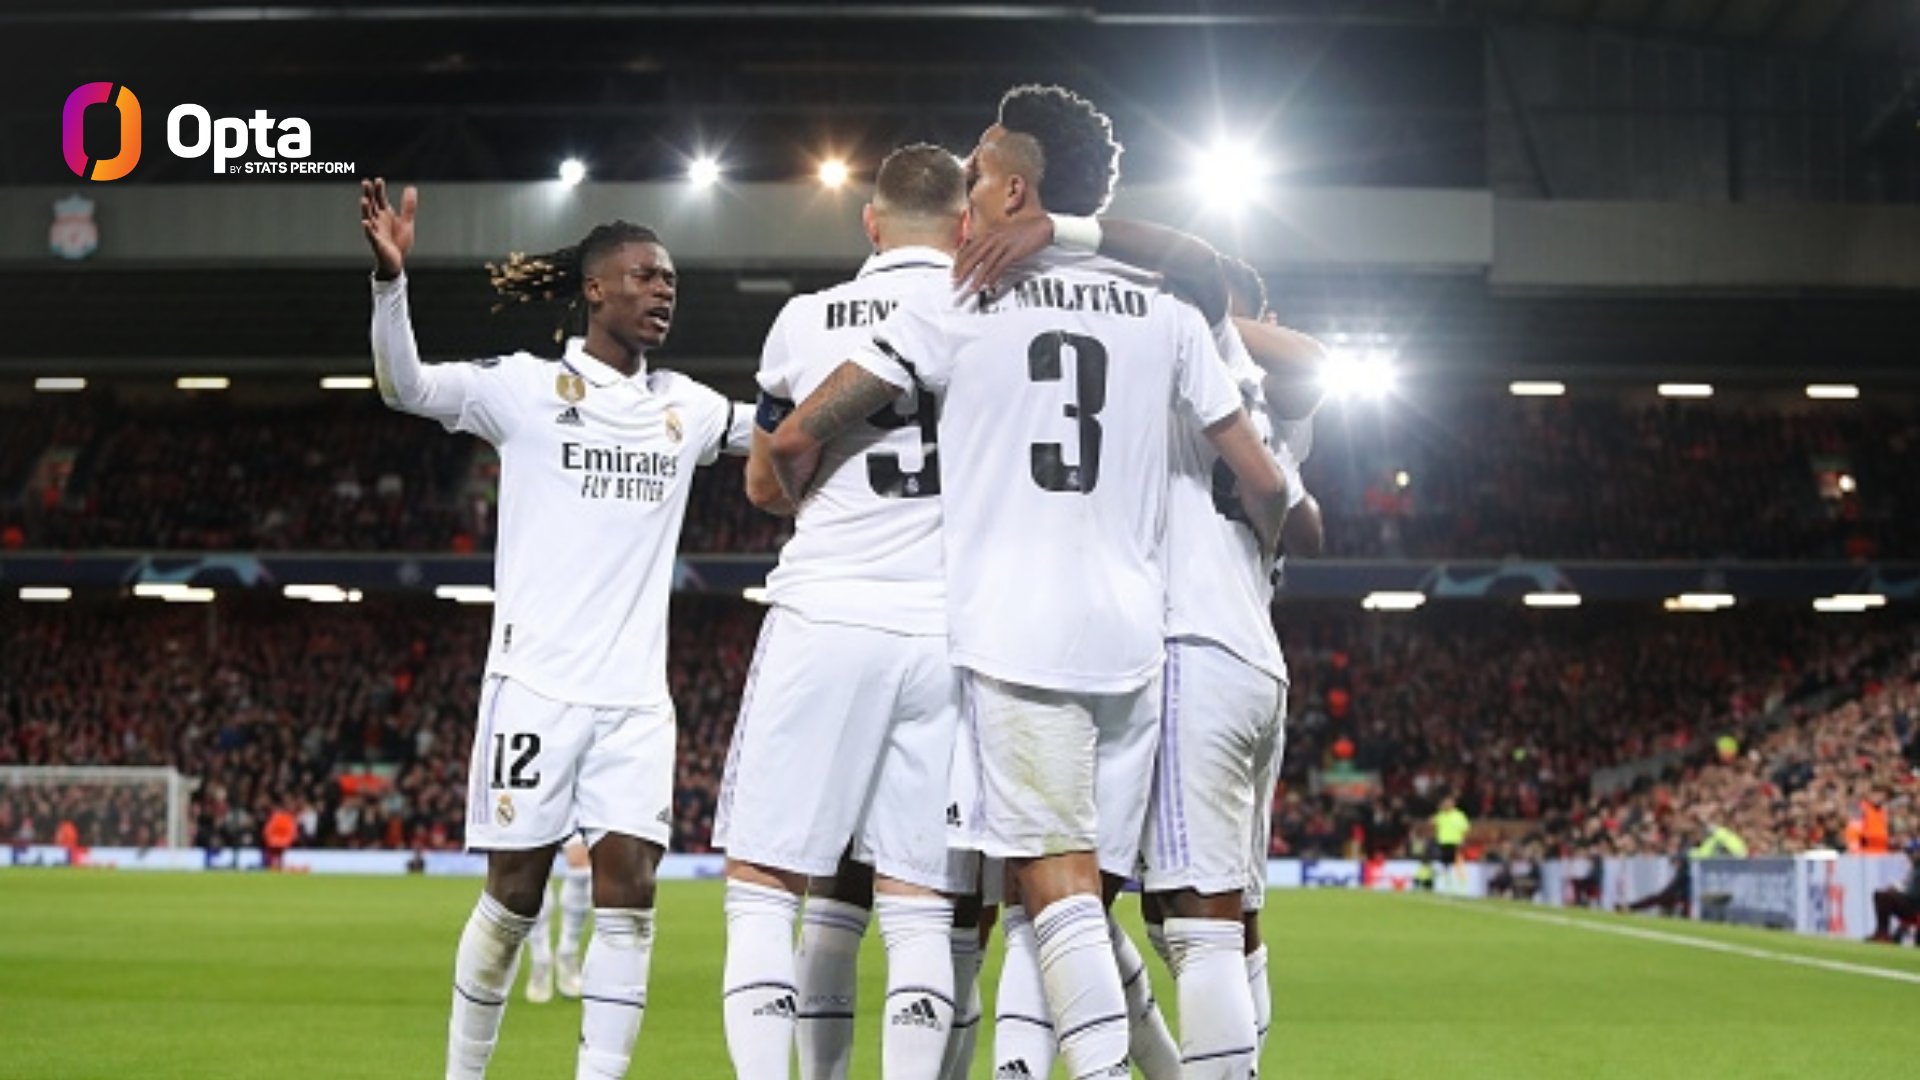 Victorieux face à Liverpool, le Real Madrid fait tomber un record vieux d’un demi-siècle en Ligue des Champions